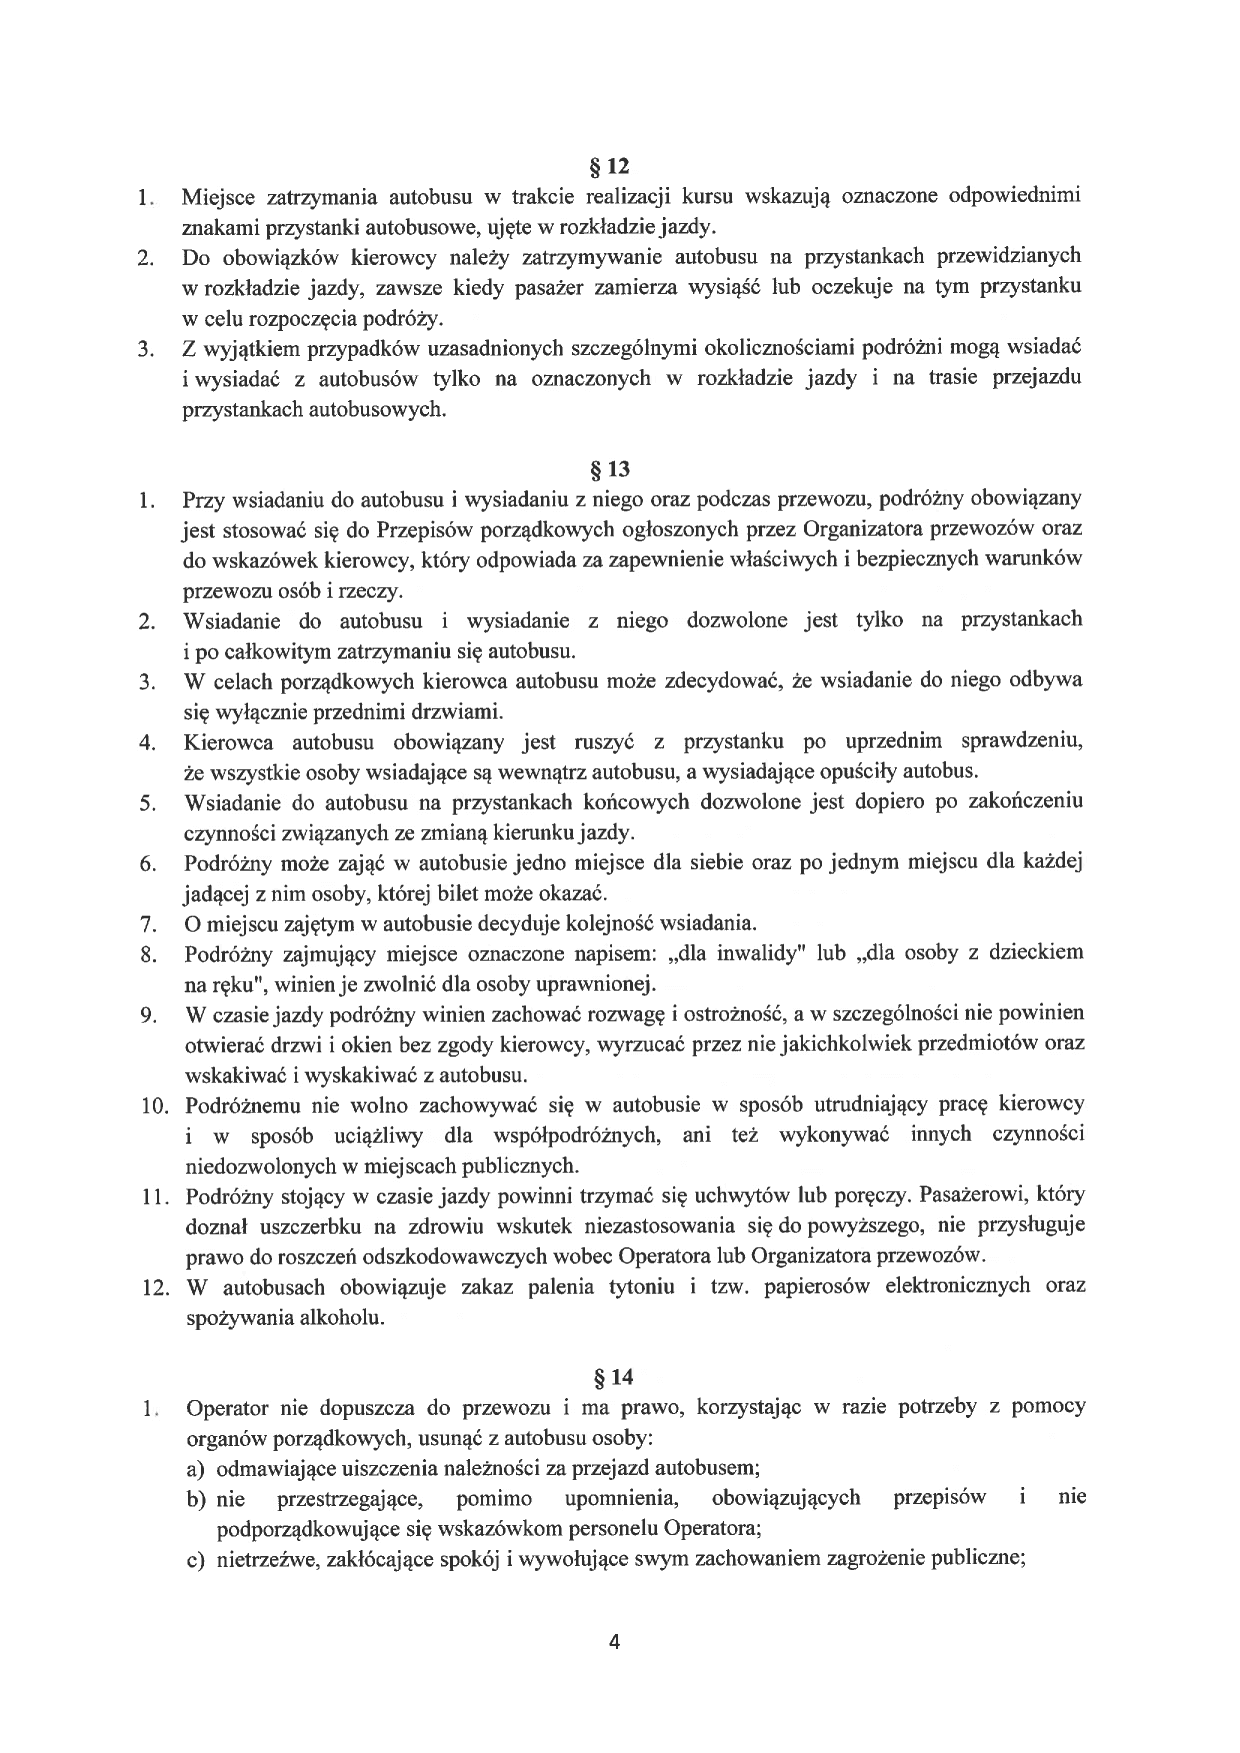 Regulamin przewozu str. 4